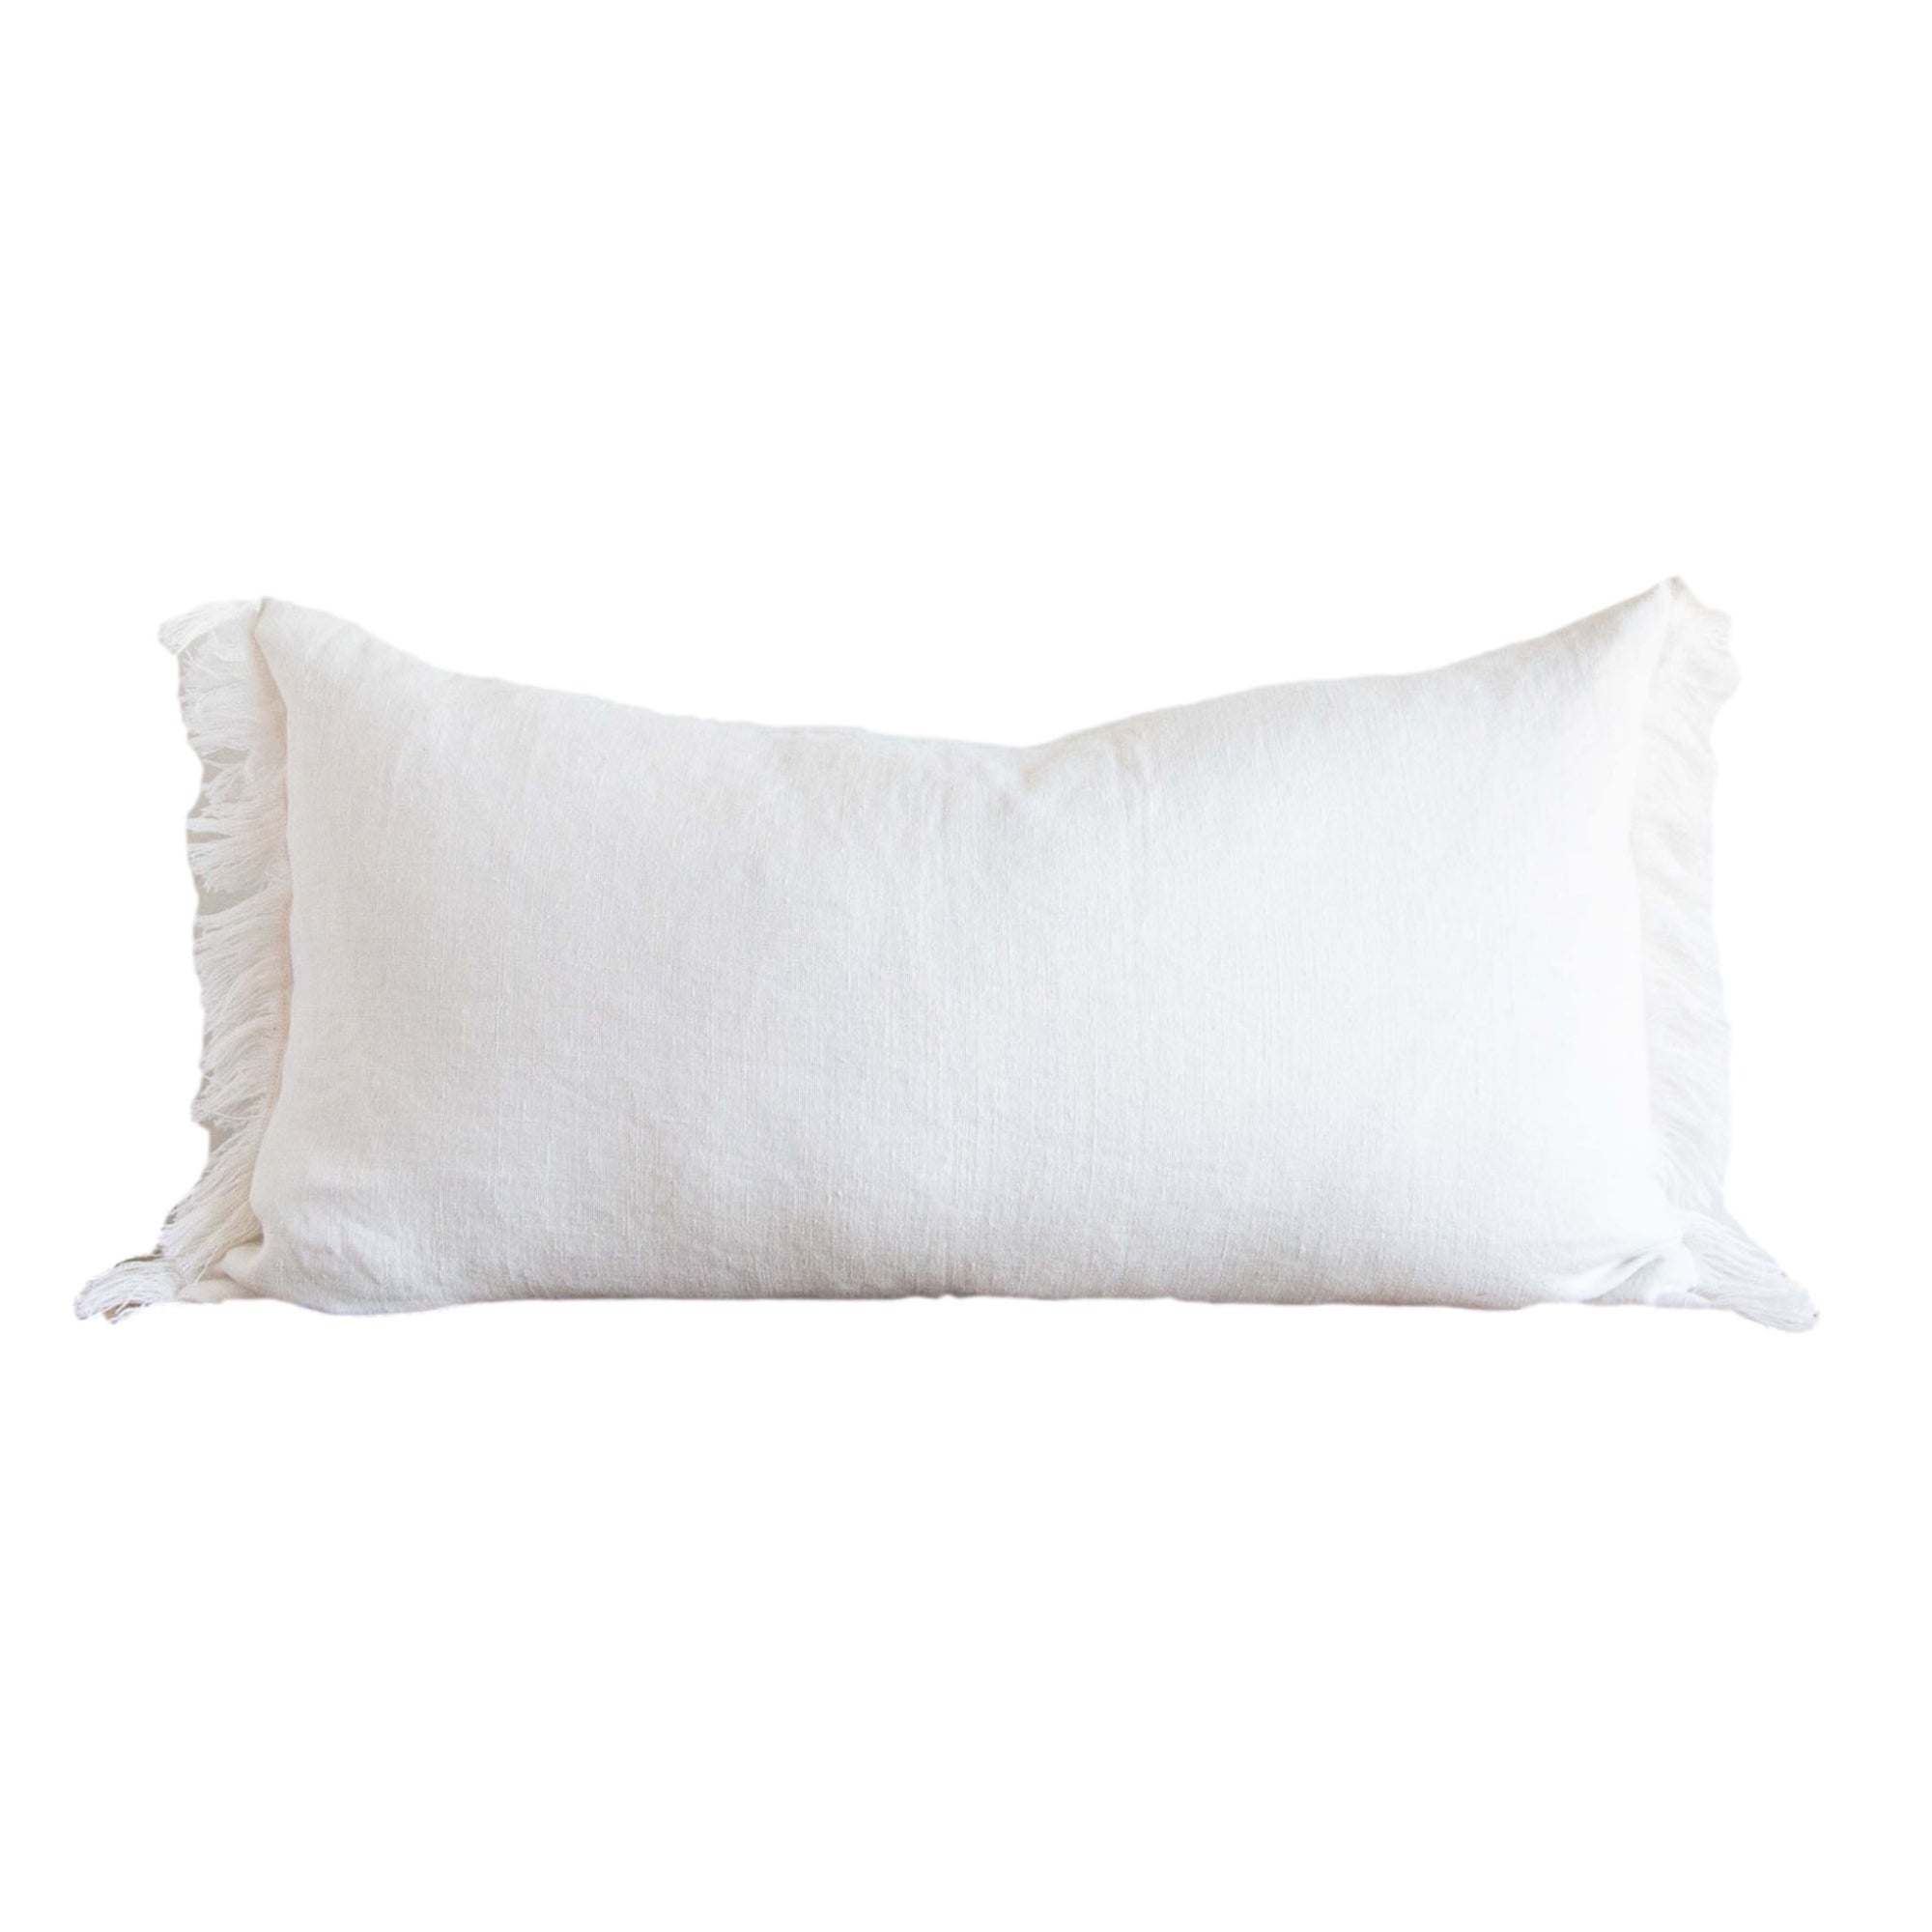 Belgian Linen Fringe Pillow